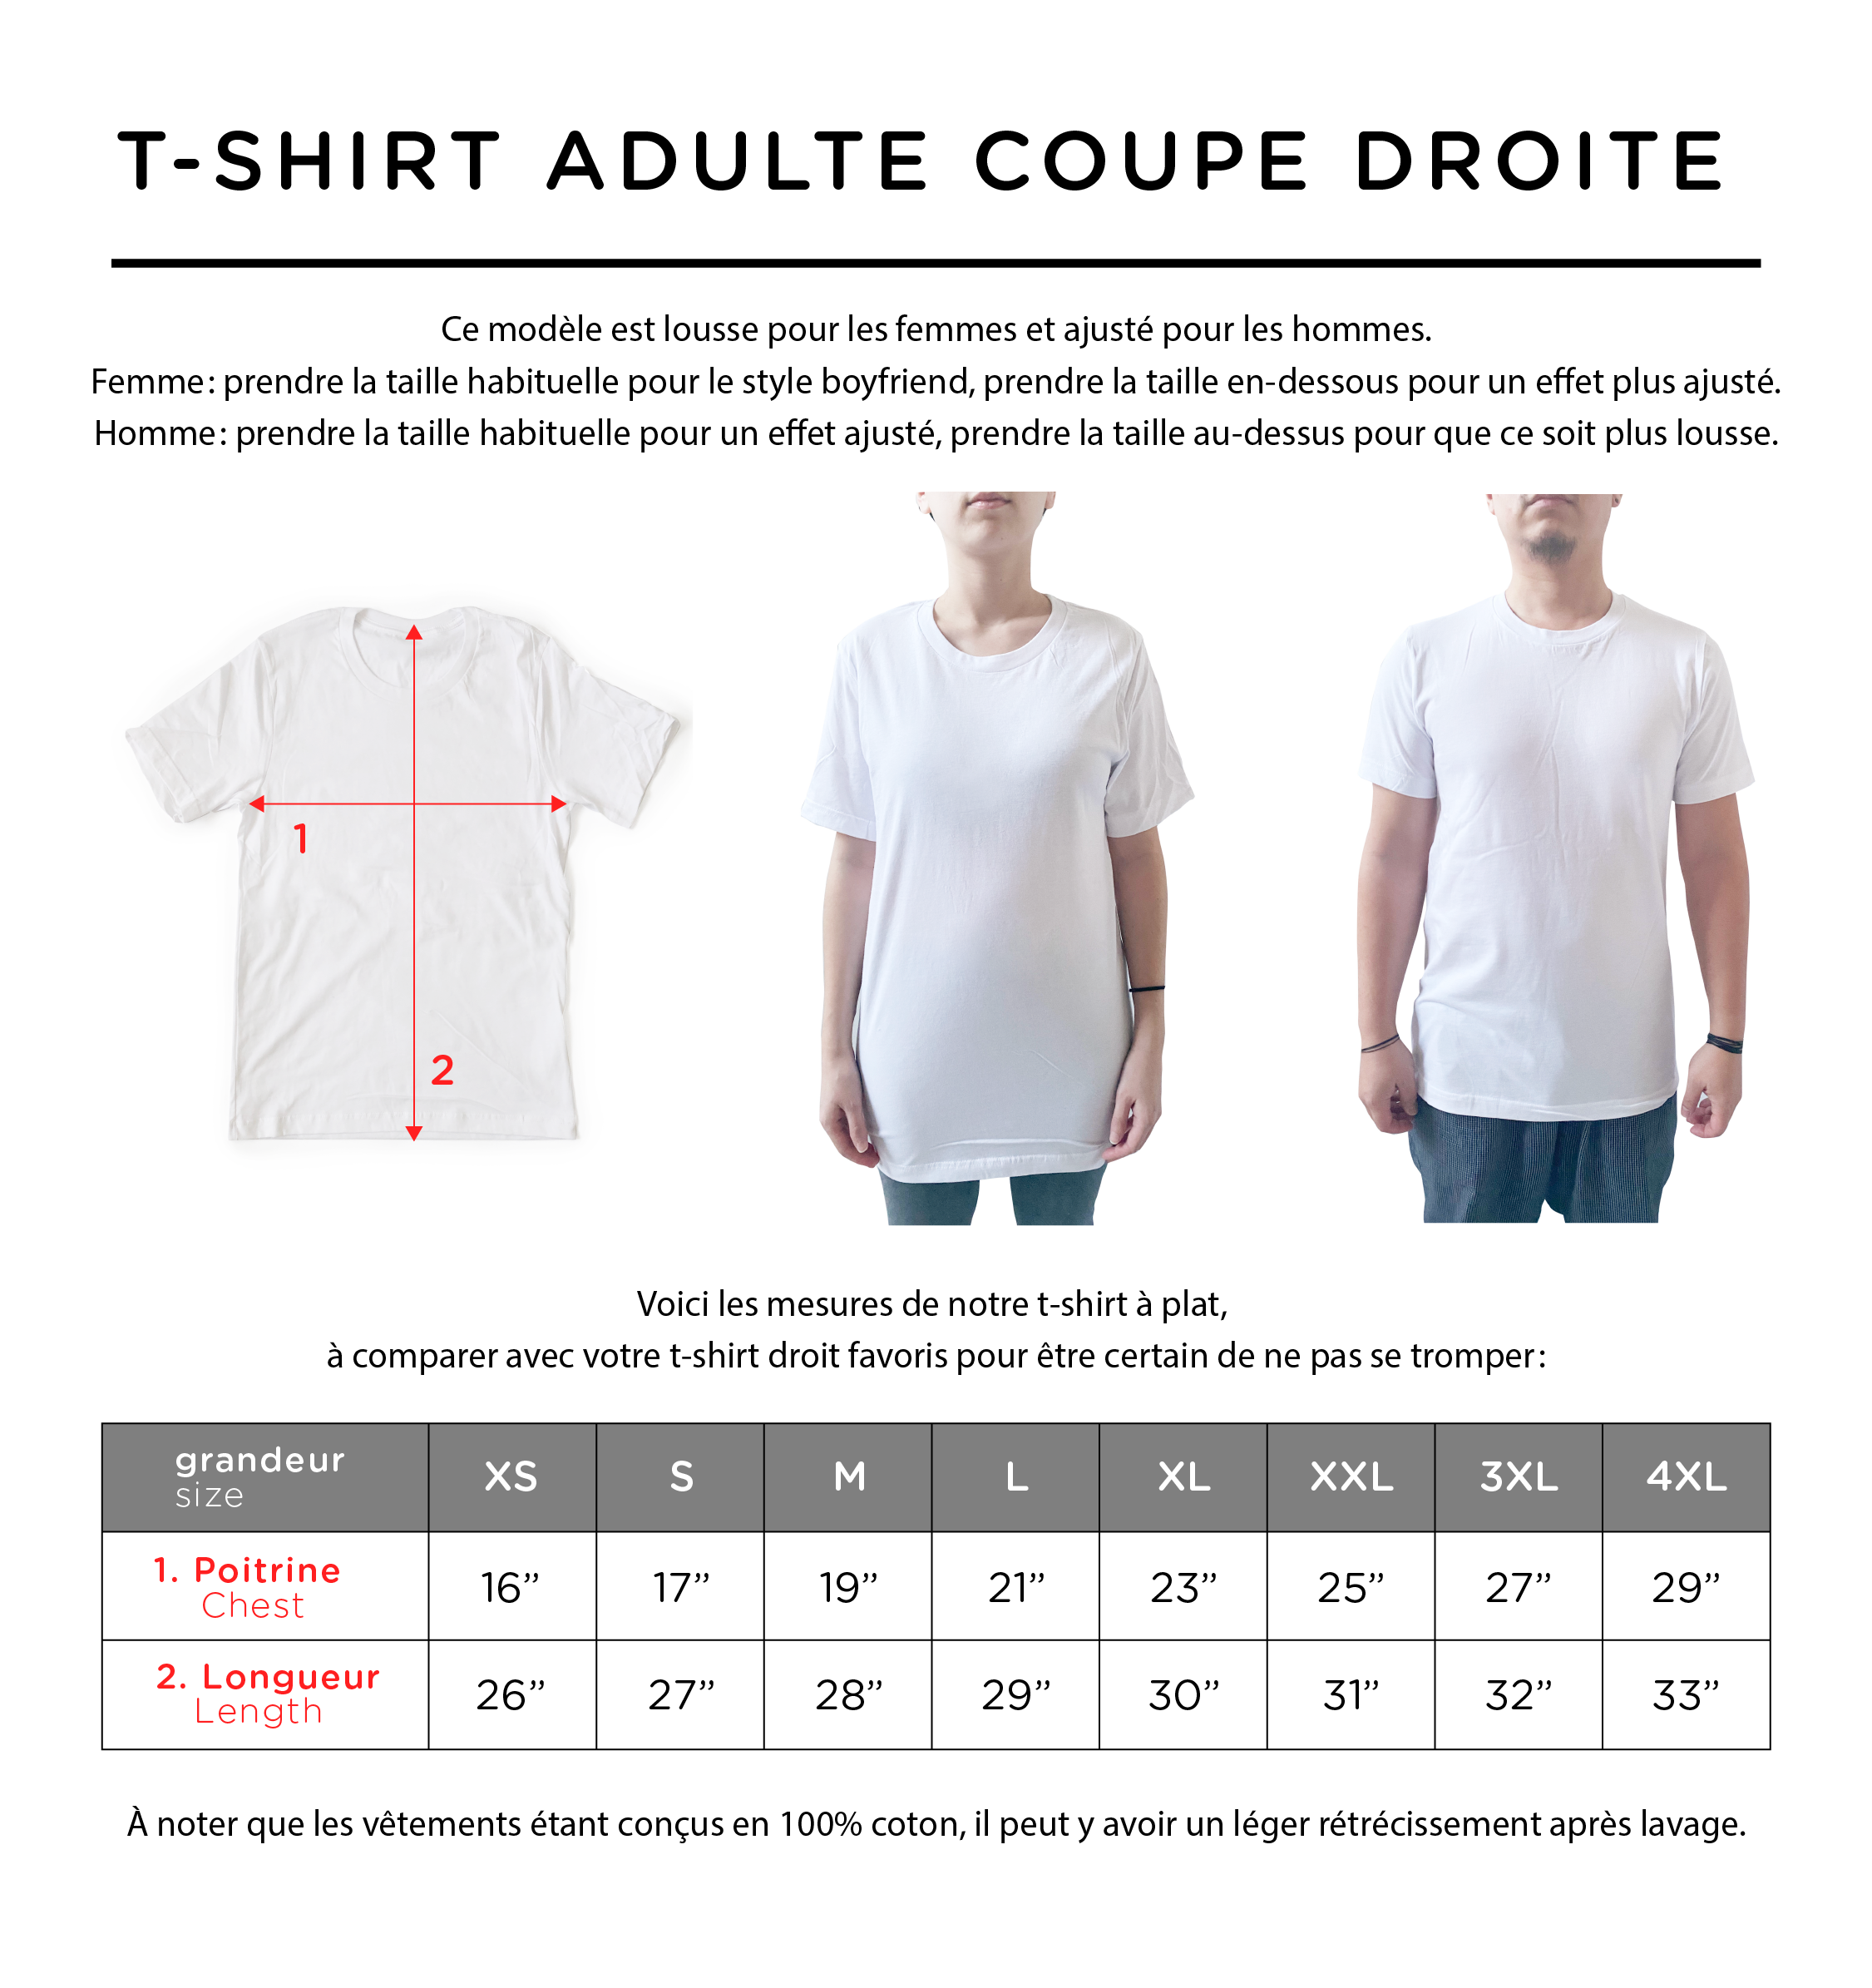 T-shirt/Crewneck Adulte CŒUR-SIGNATURE "maman", "papa" + autres options pour la famille